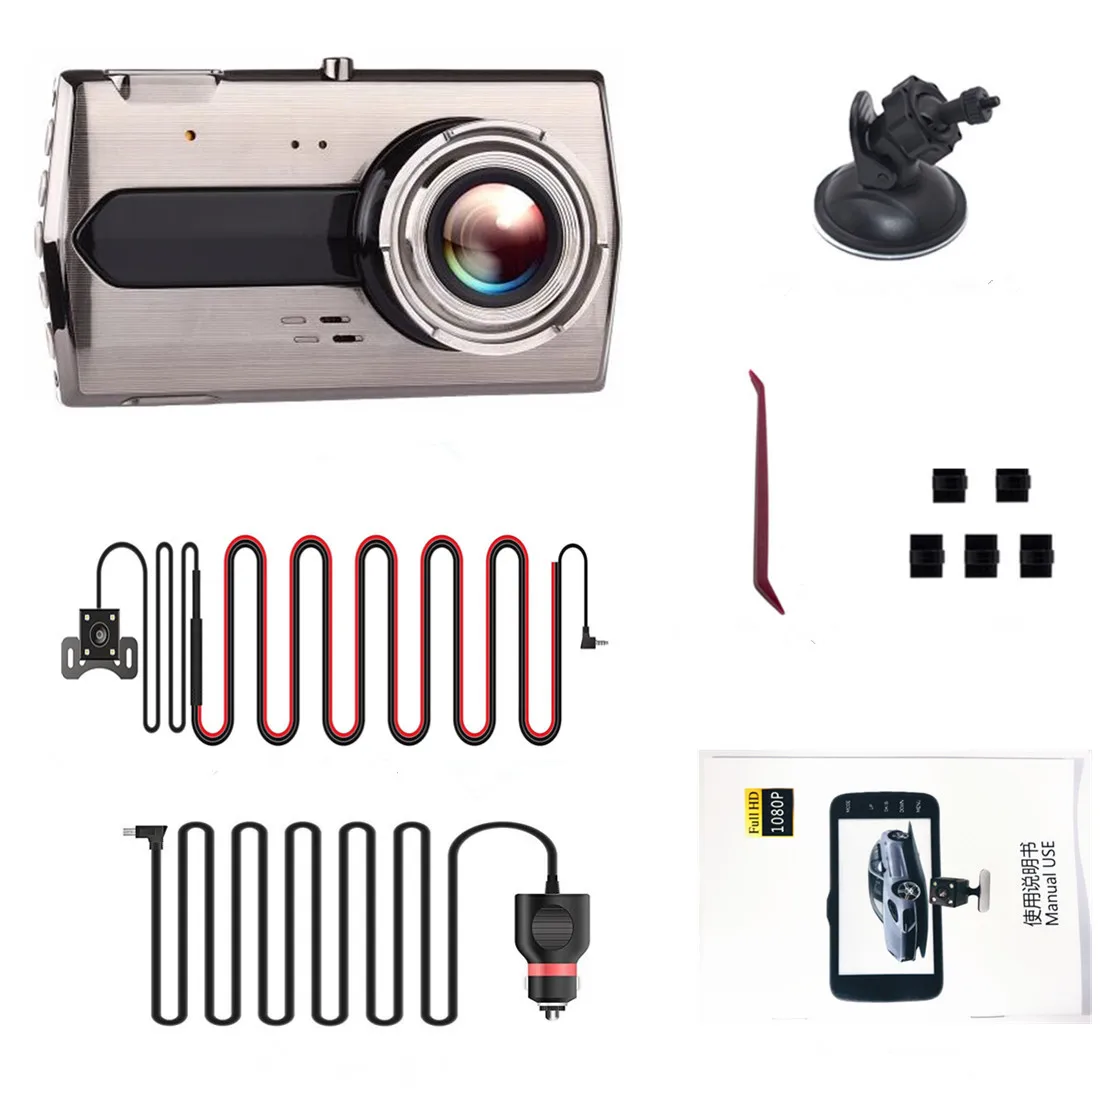 Dash камера Full HD 1080P " ips Автомобильный видеорегистратор с двойным объективом видеорегистратор Передний+ задний видеорегистратор ночного видения g-сенсор монитор парковки HDMI